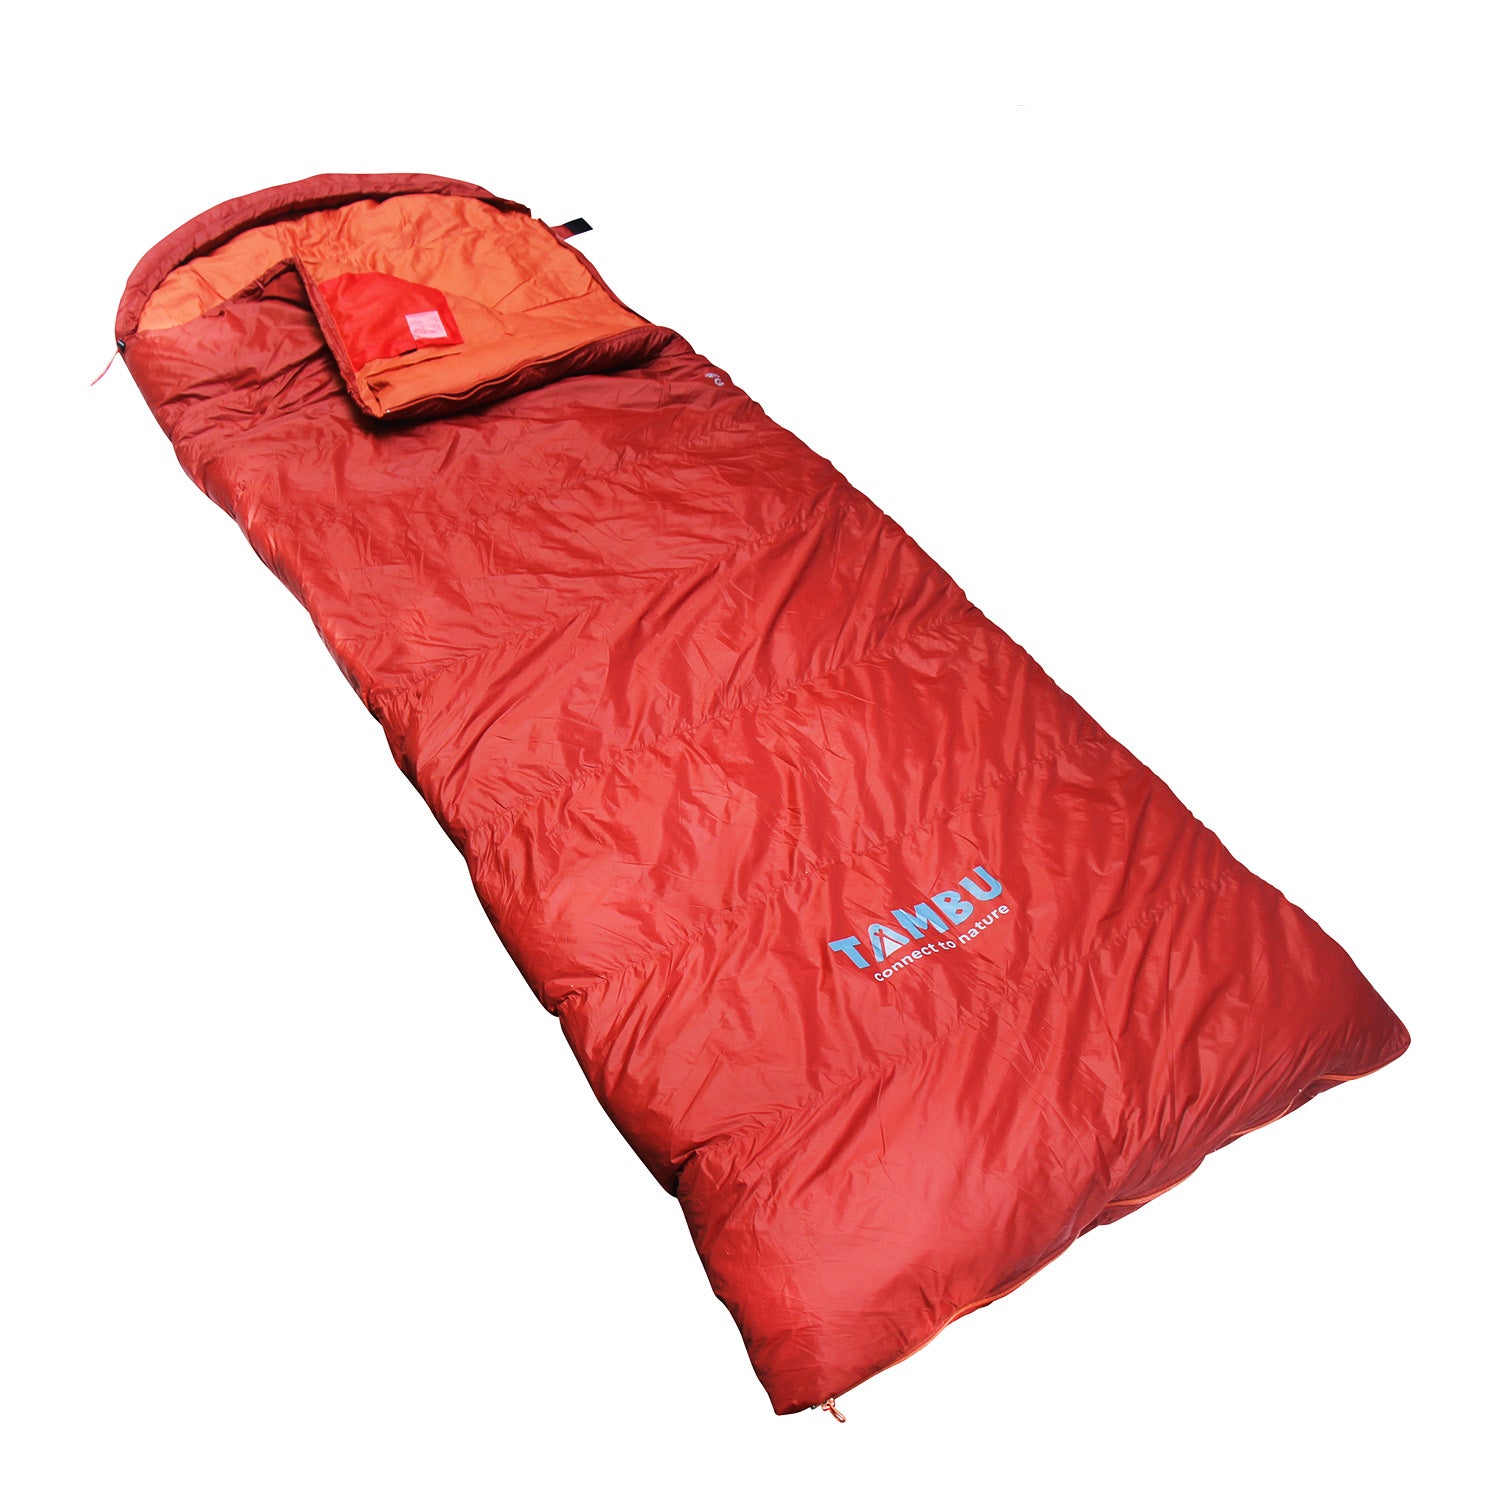 MEG | blanket sleeping bag 1625 gr